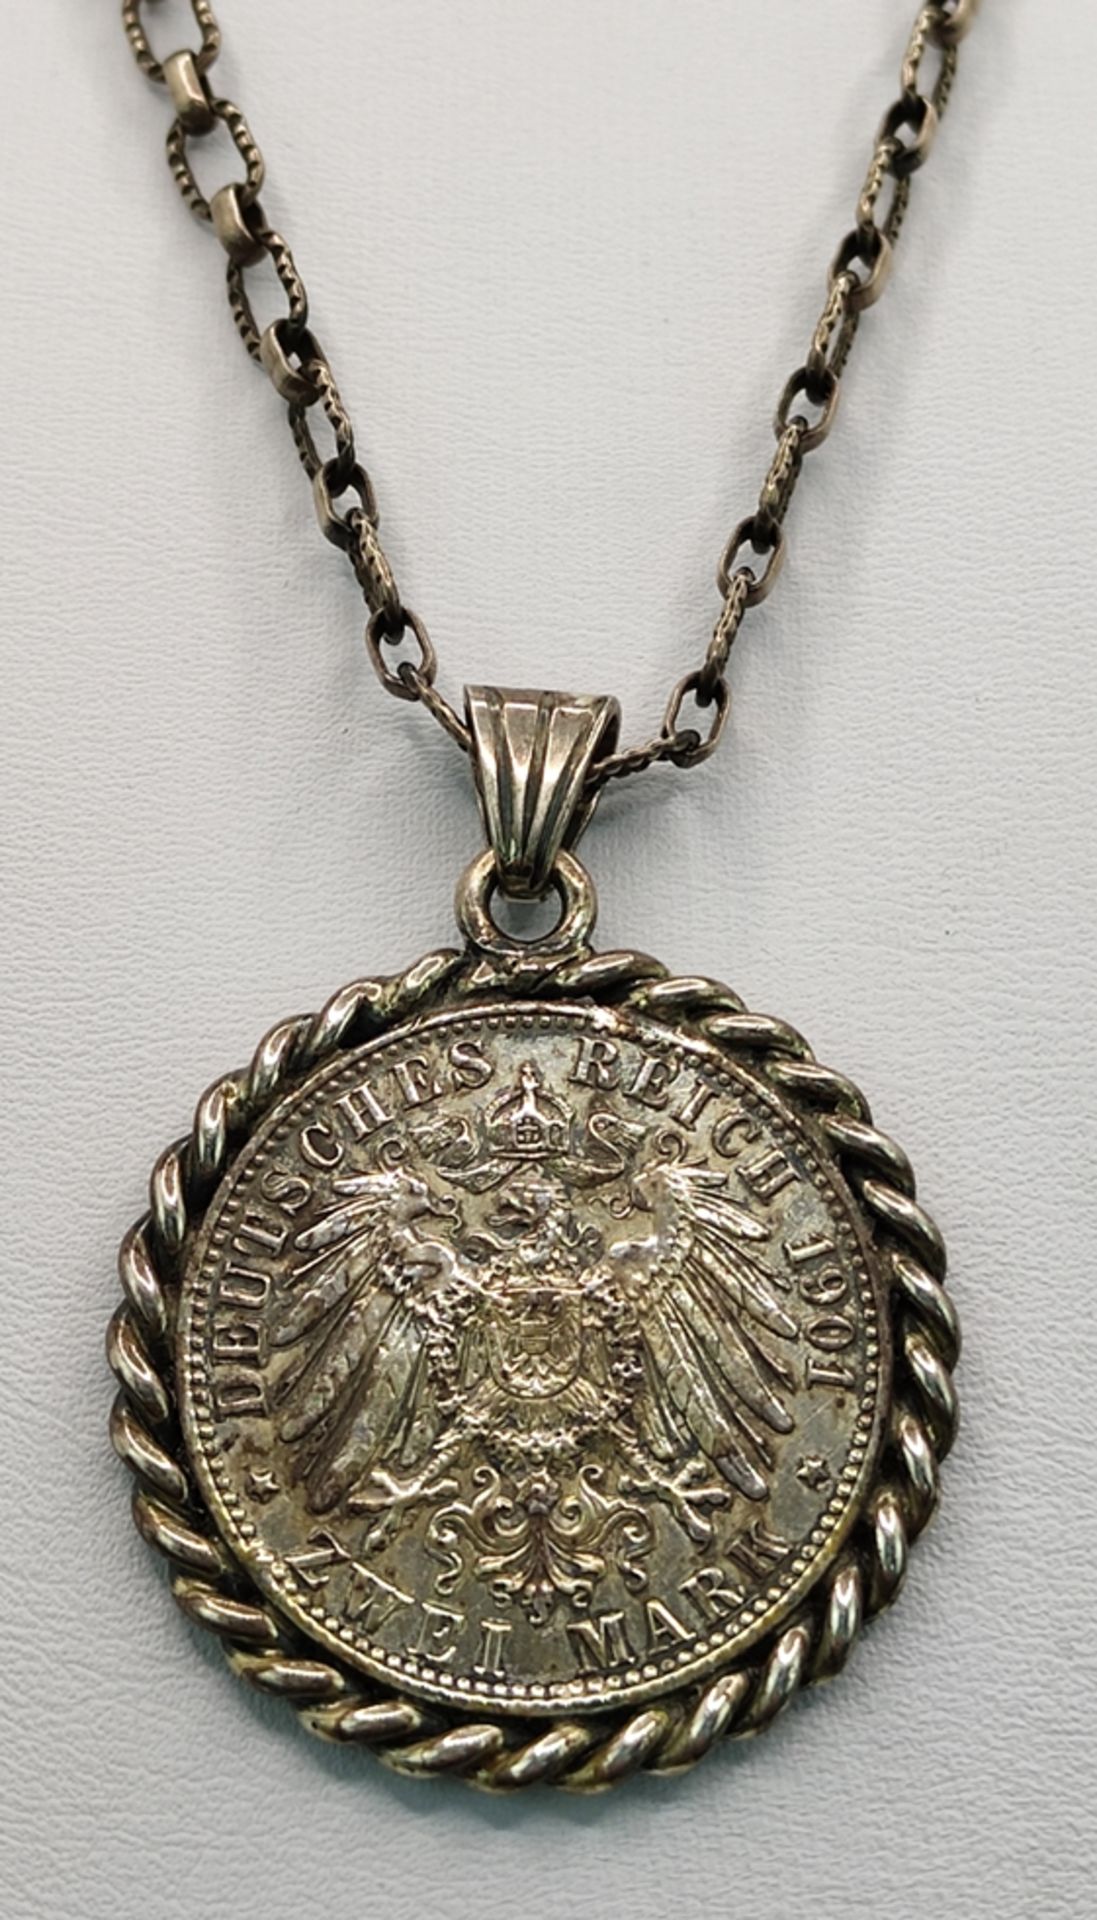 Münzanhänger, Deutsches Reich, Friedrich 1701- Wilhelm II 1901, 2 Mark Münze, eingefasst in Silber 